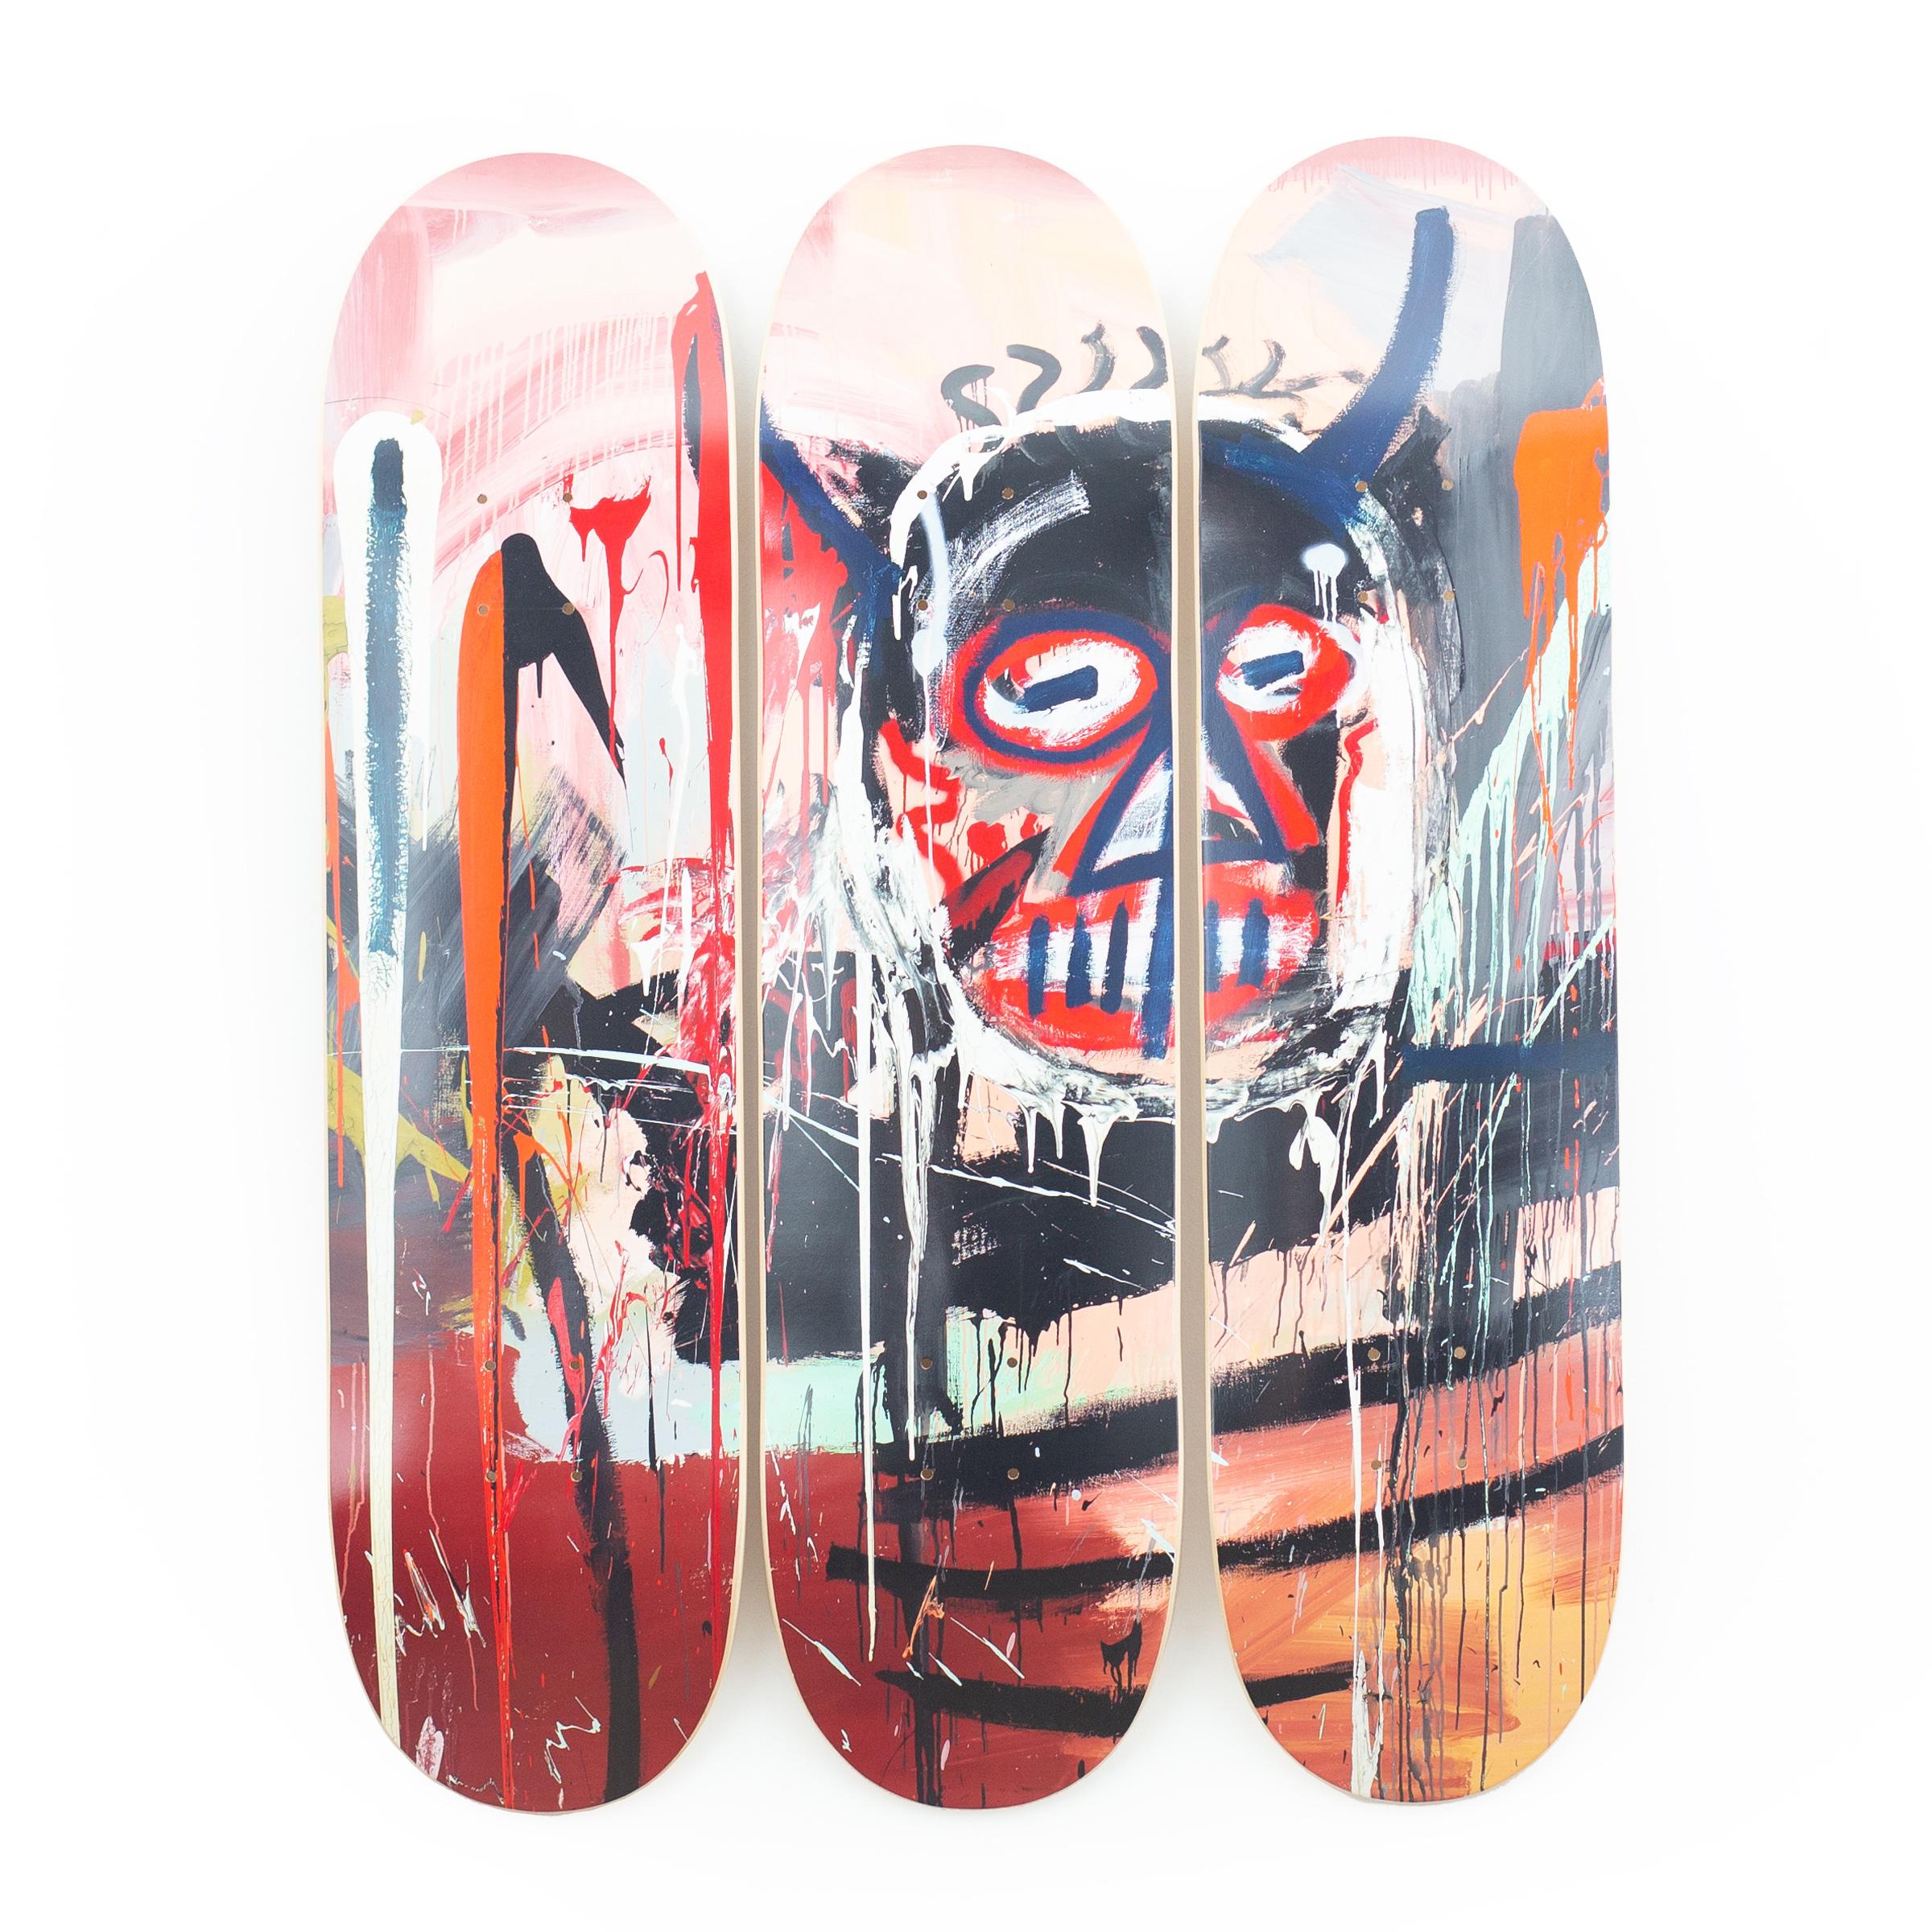 The Skateroom x Succession de Jean-Michel Basquiat
Sans titre (diable), 1982 / 2023
Sérigraphie sur bois d'érable
31 1/2 × 7 9/10 × 3/10 in  80 × 20 × 0.7 cm
Edition ouverte 
Sous licence Artestar, New York

